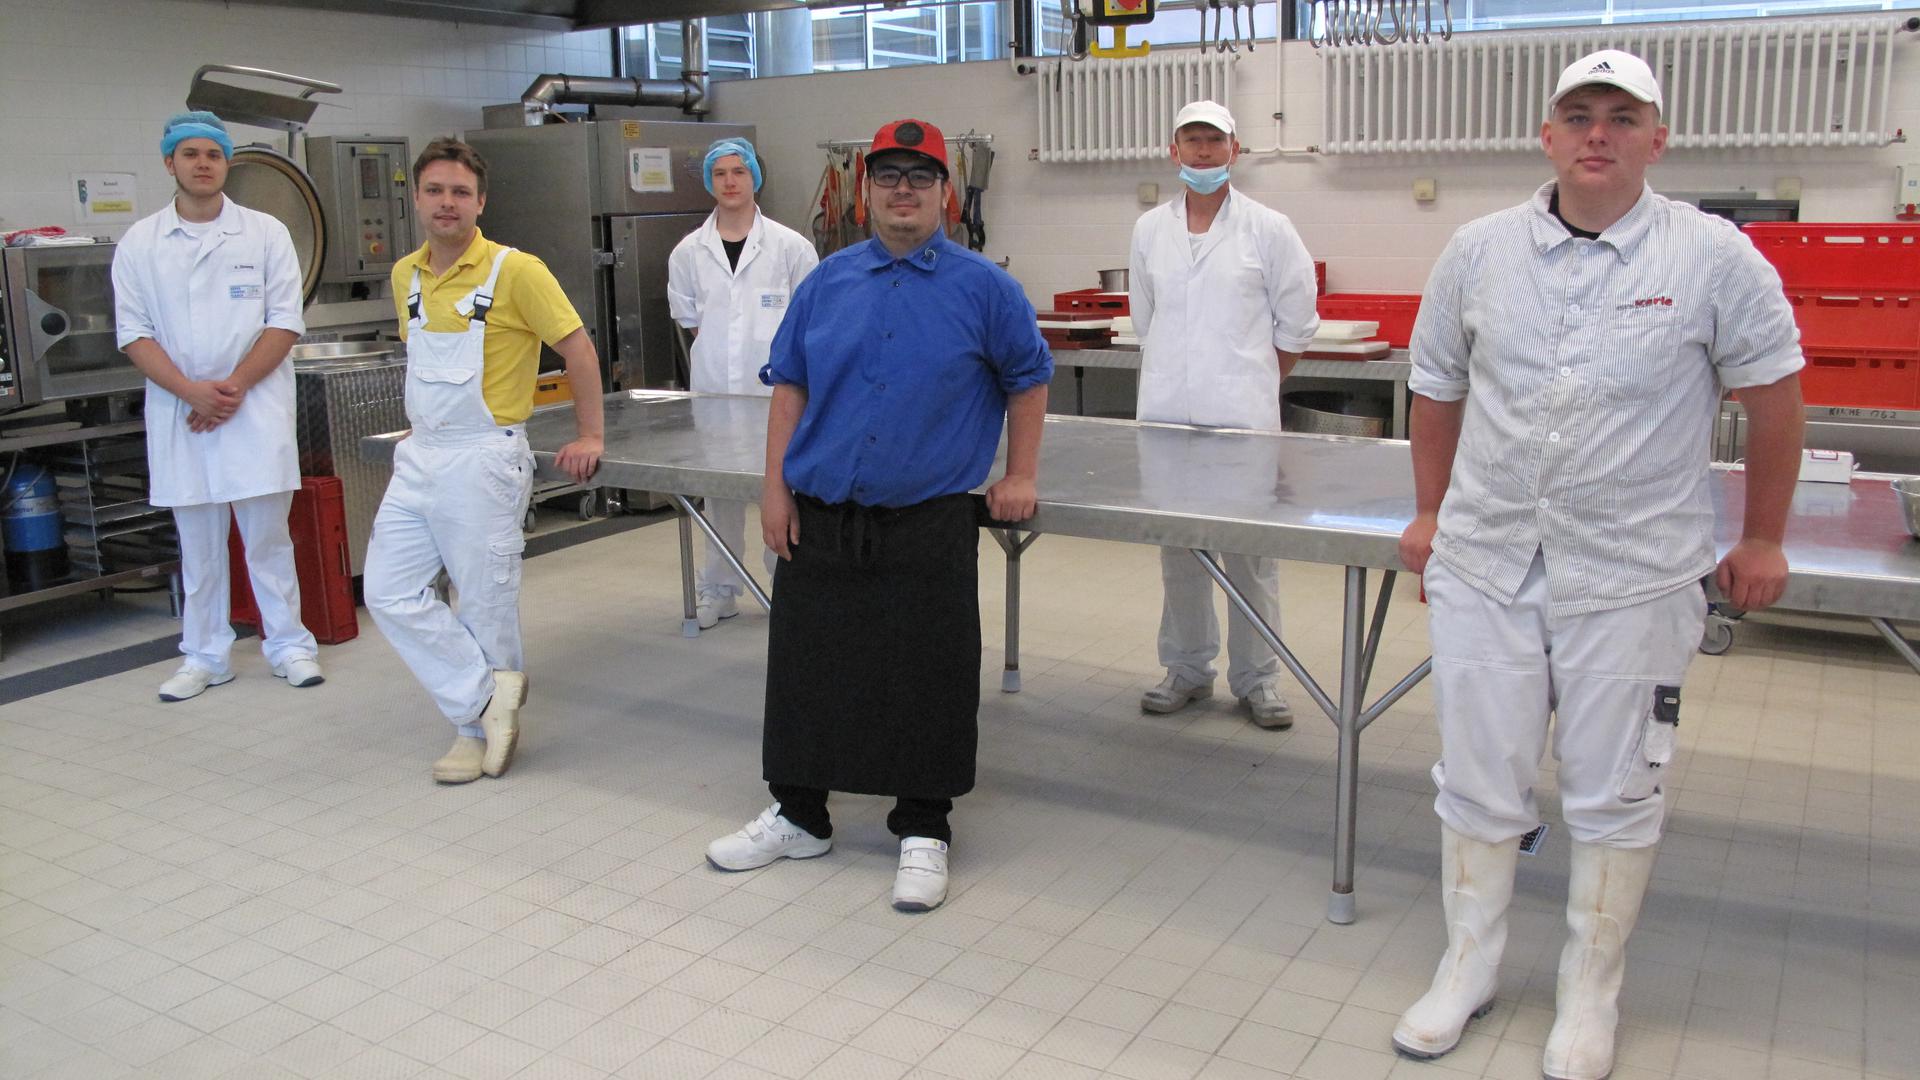 Klassenfoto in der Wurstküche: Metzgerlehrlinge an der Gewerbeschule Durlach.